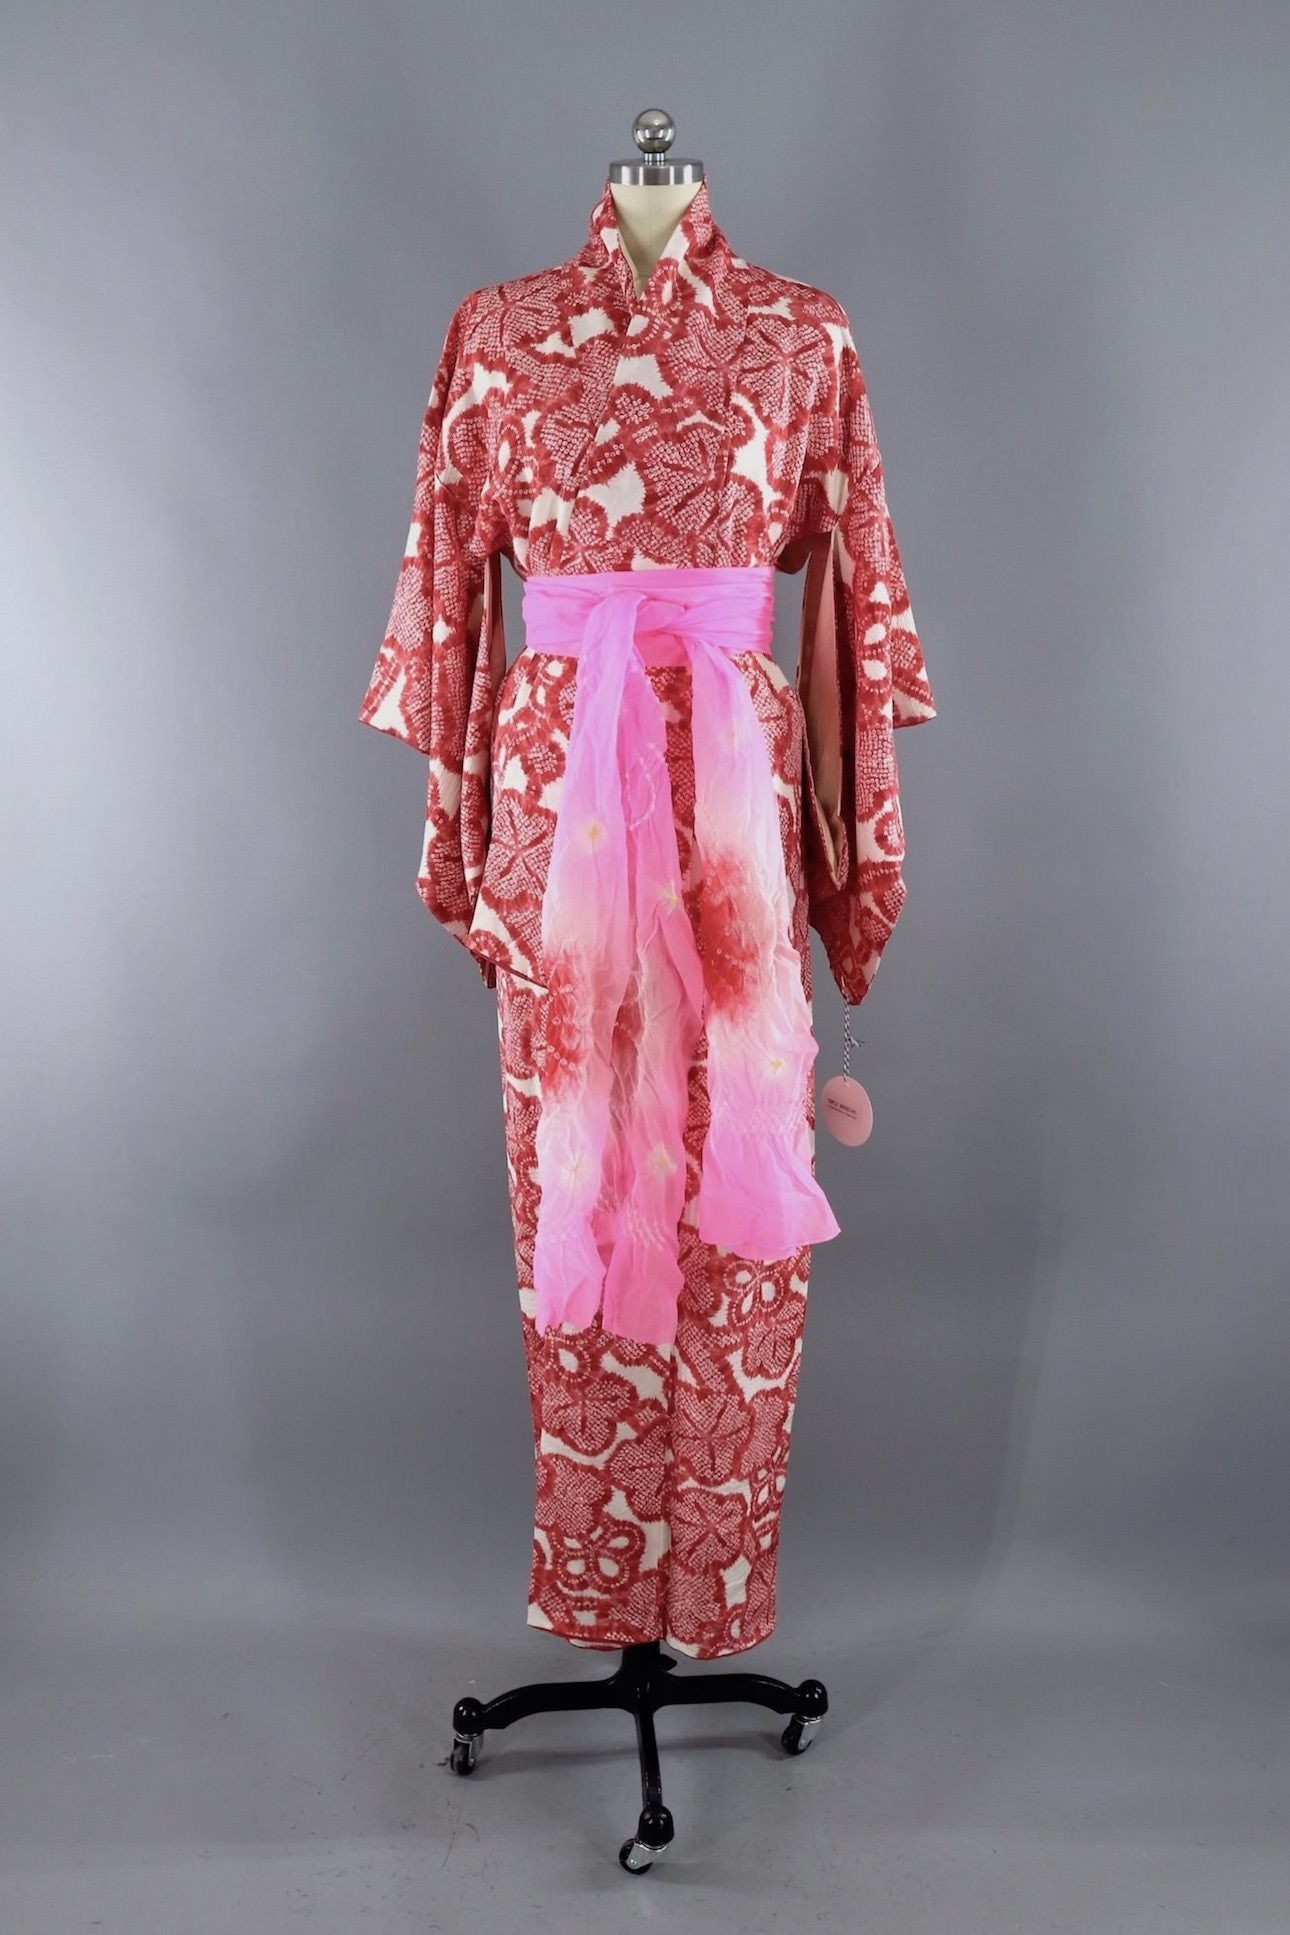 Vintage Silk Kimono Robe / Red and White Shibori Floral - ThisBlueBird